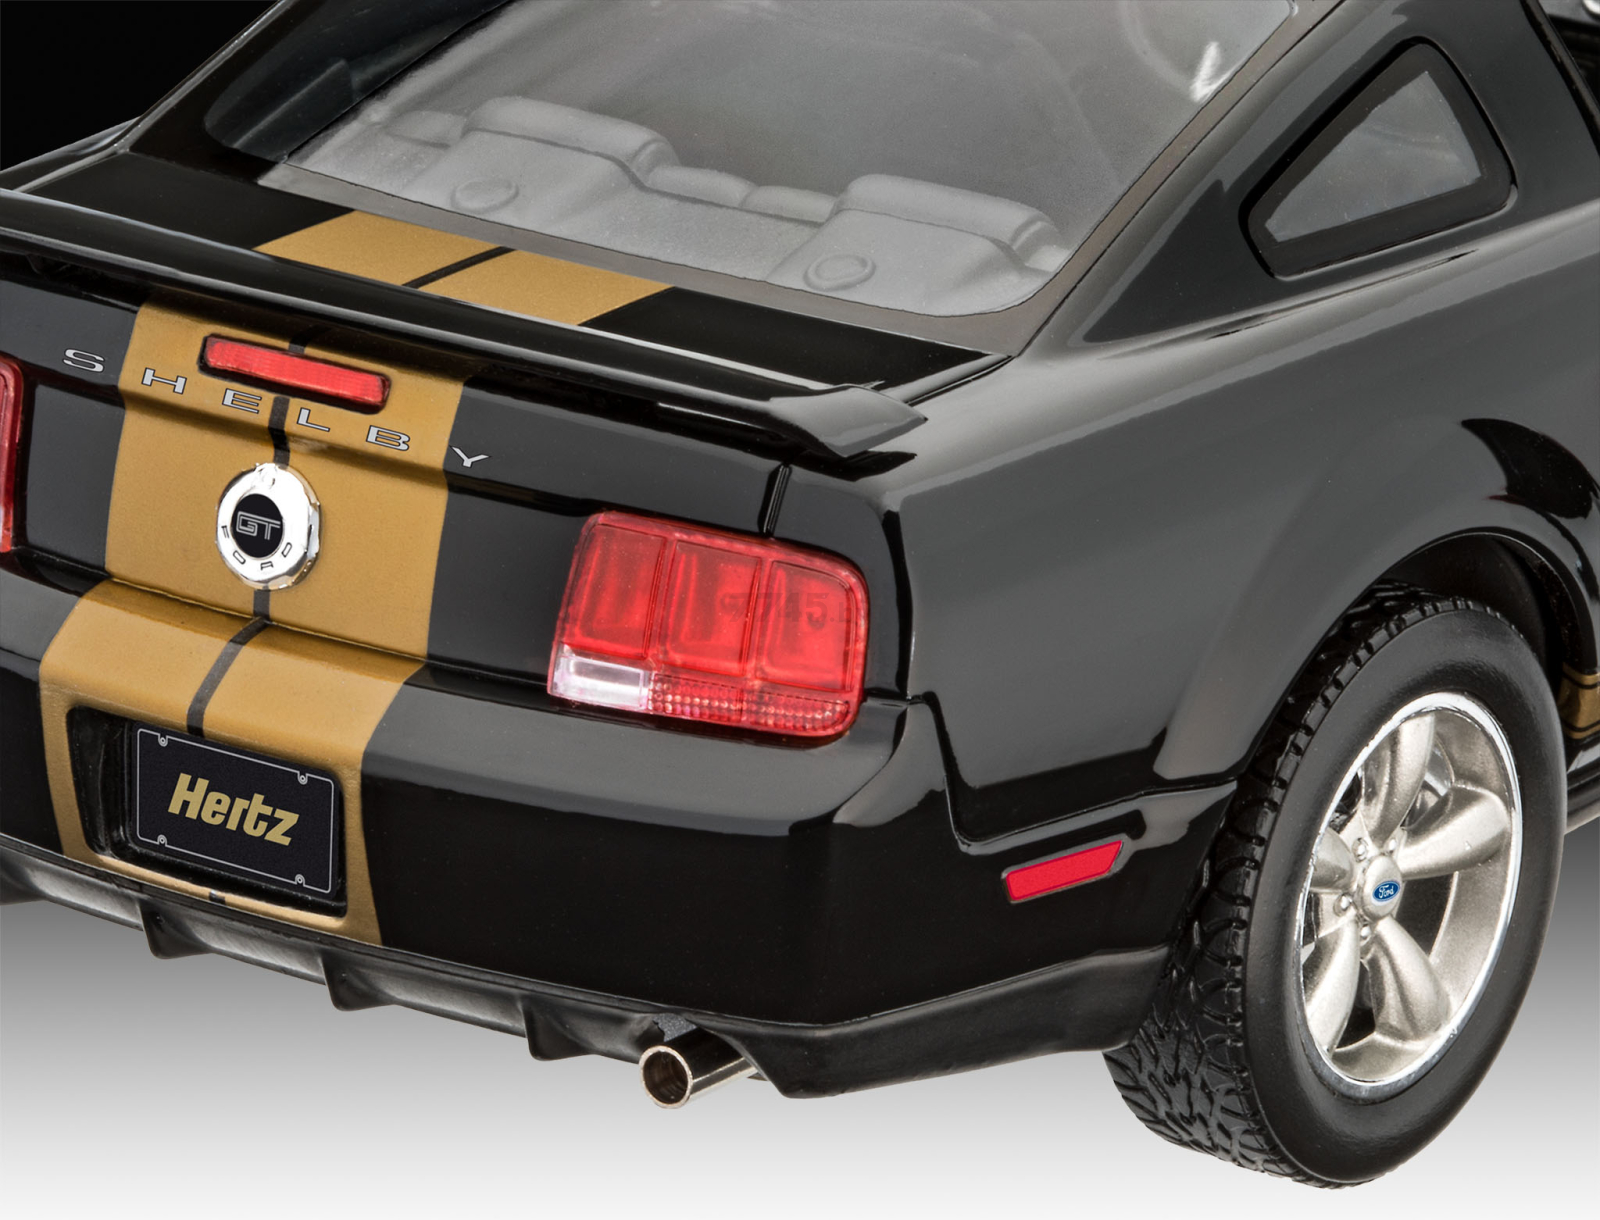 Сборная модель REVELL Автомобиль Ford Shelby GT-H 1:24 (7665) - Фото 3